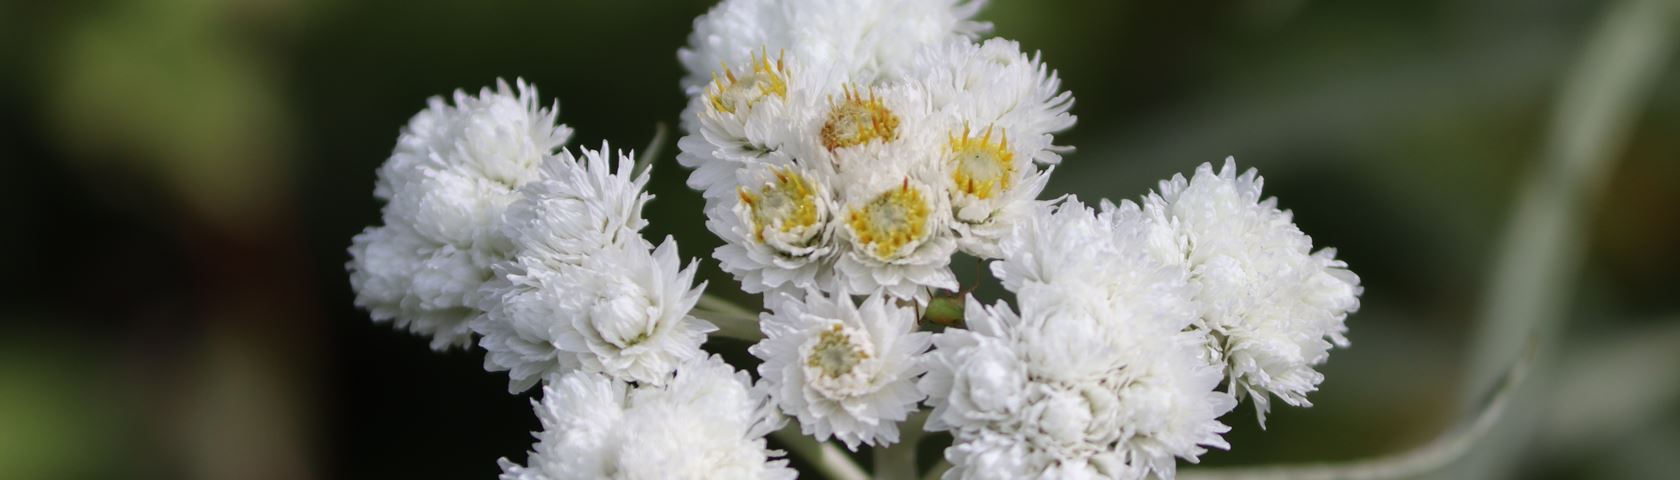 Wild White Flower